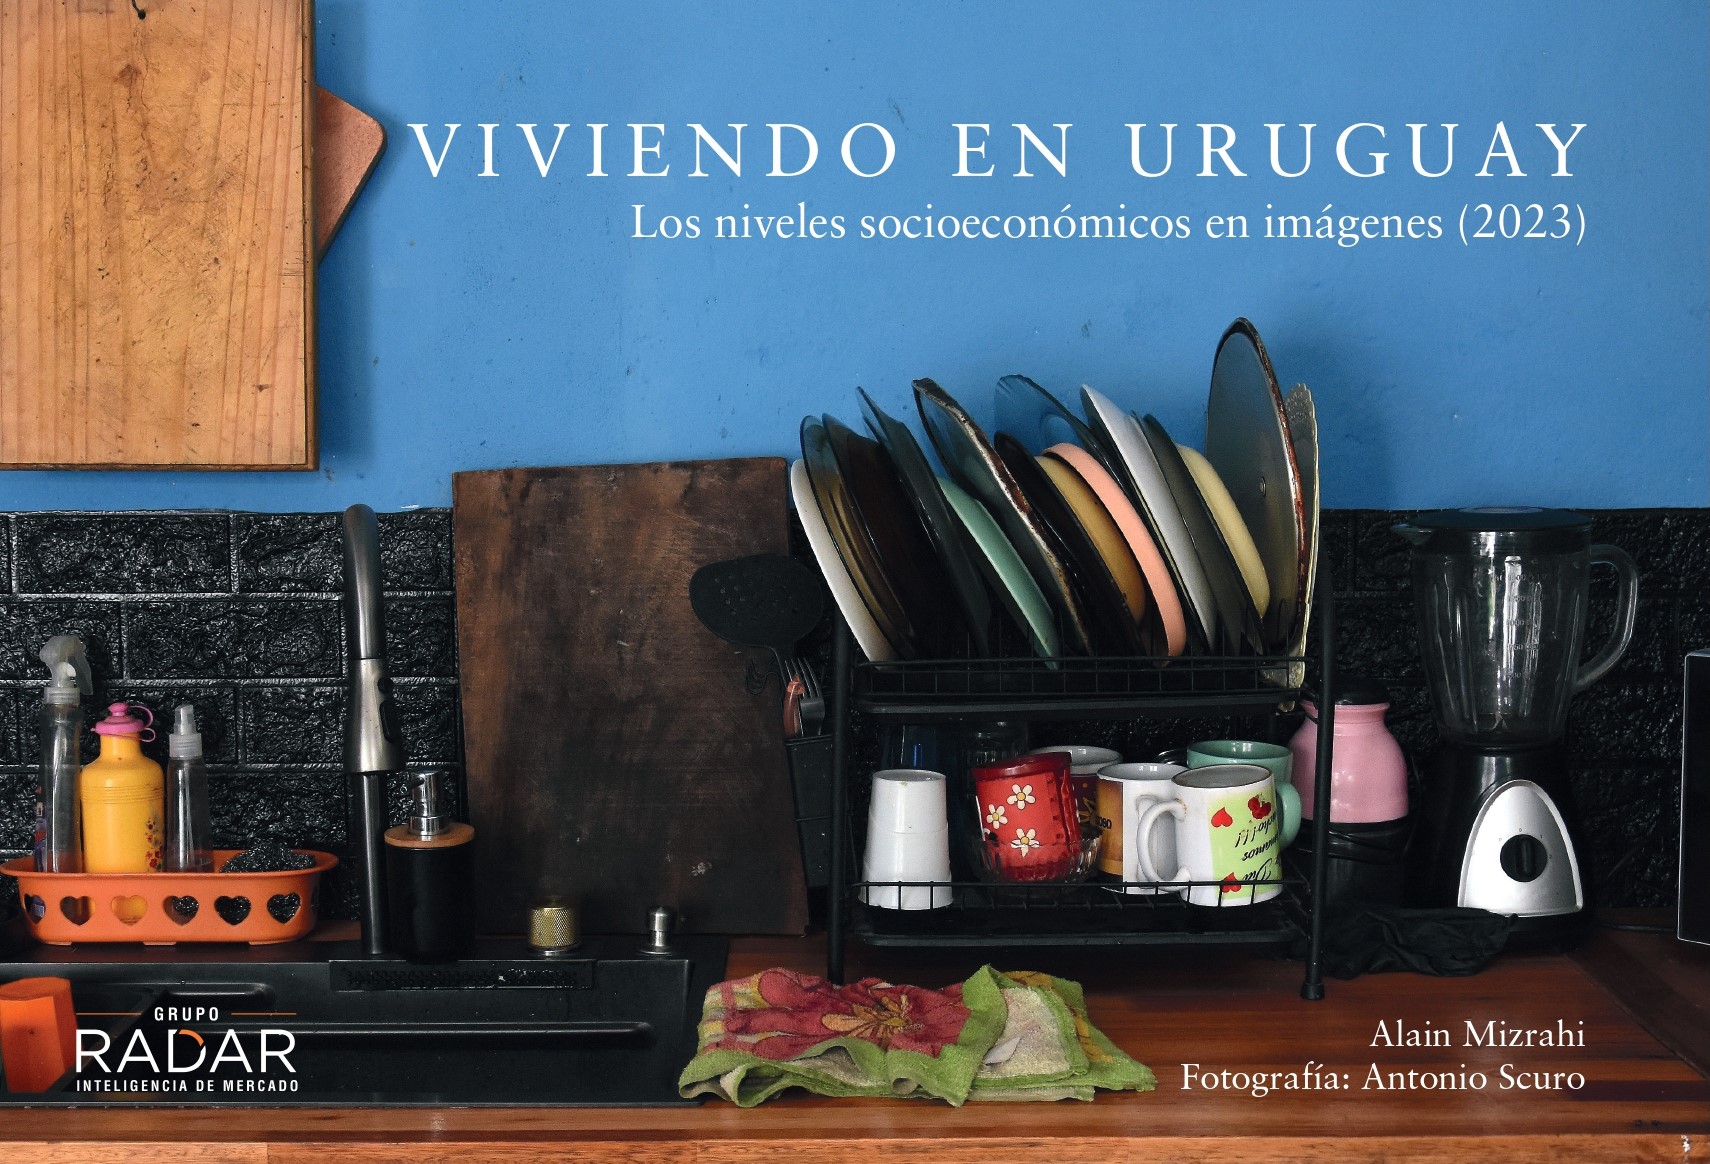 “Viviendo en Uruguay – Los niveles socioeconómicos en imágenes”